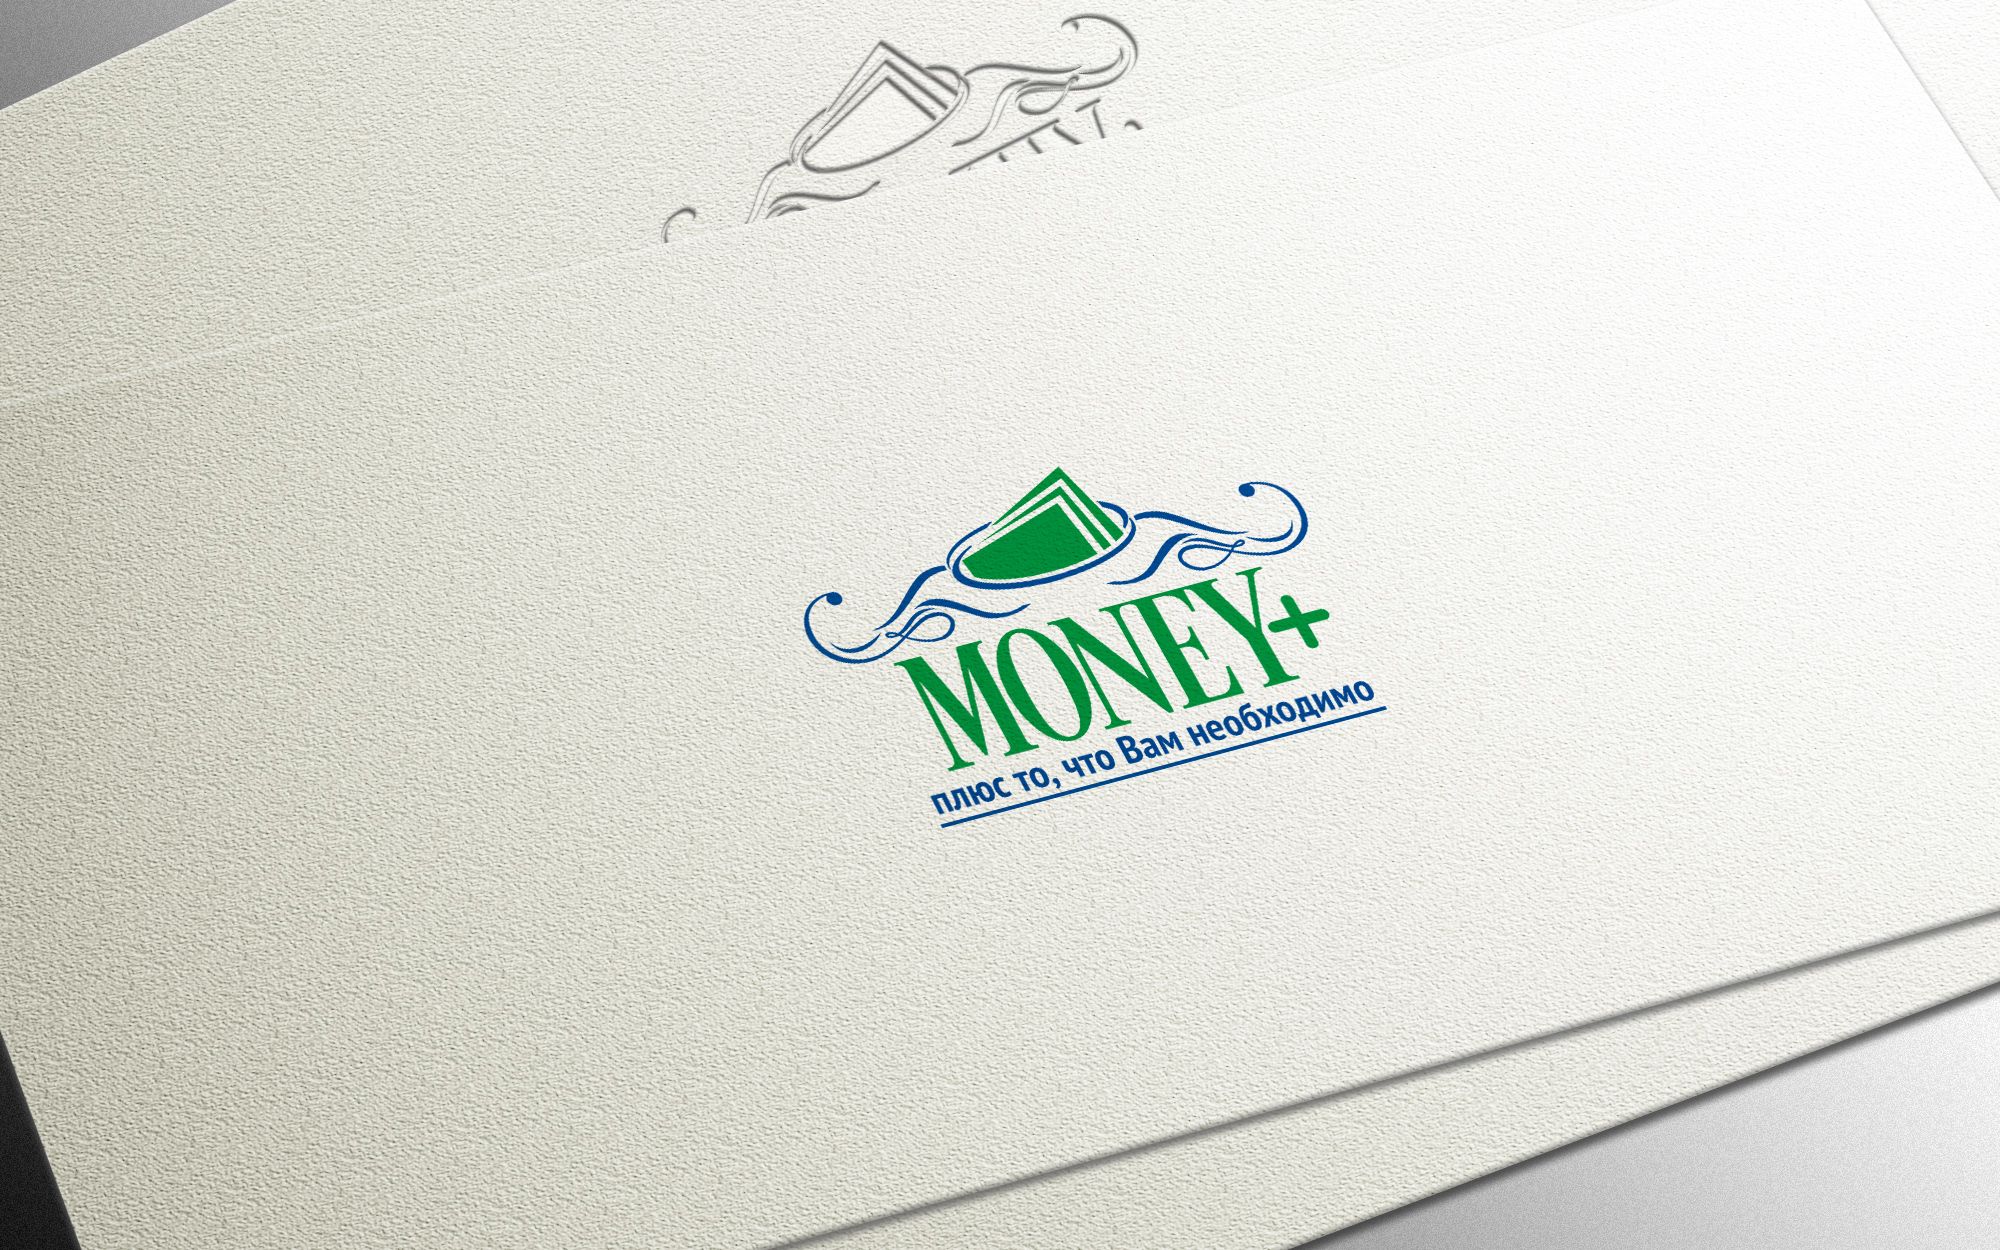 Лого и ФС для Money+   - дизайнер Gas-Min